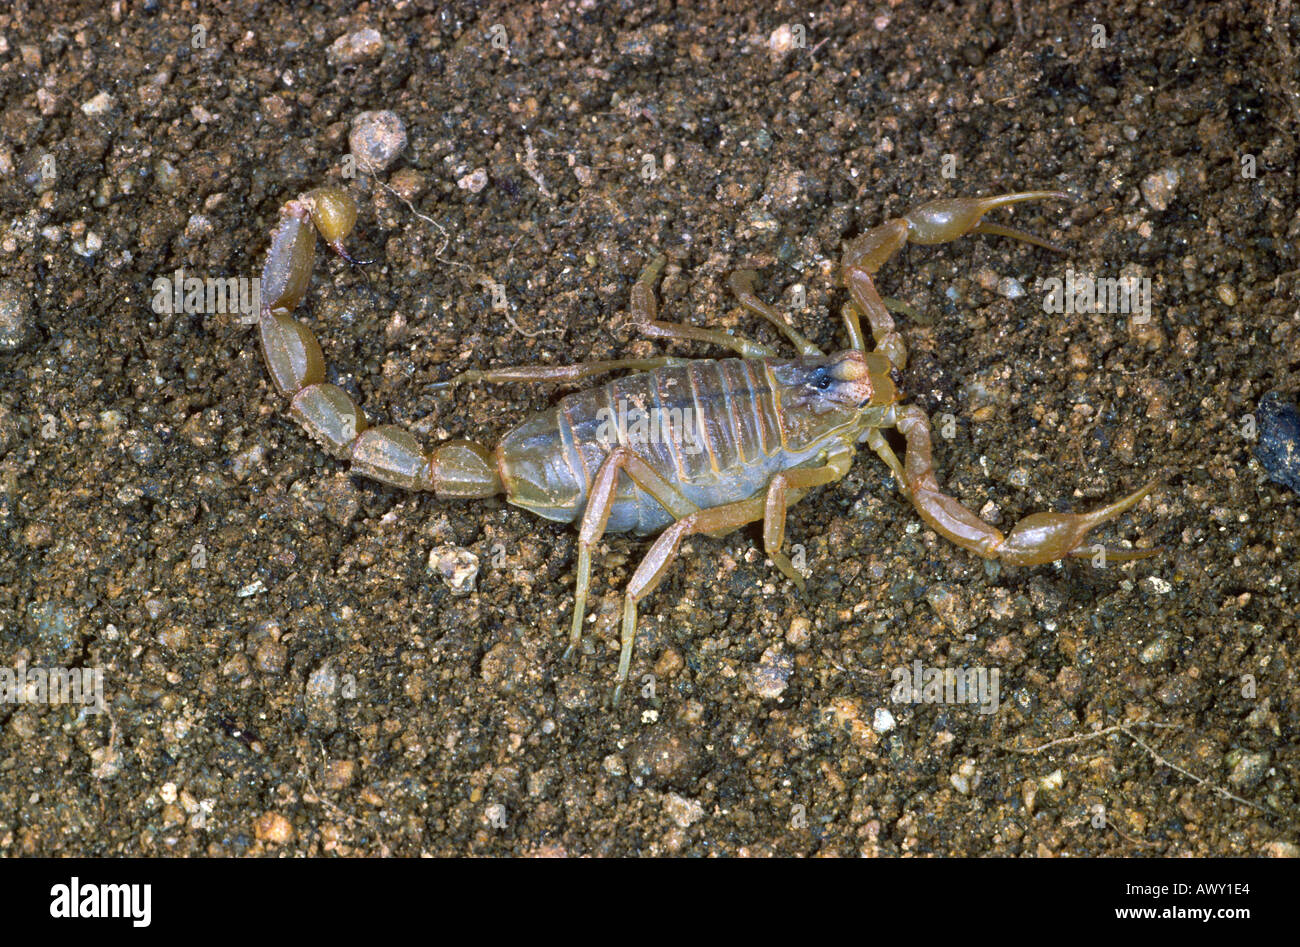 Scorpion, Buthus occitanus Stock Photo